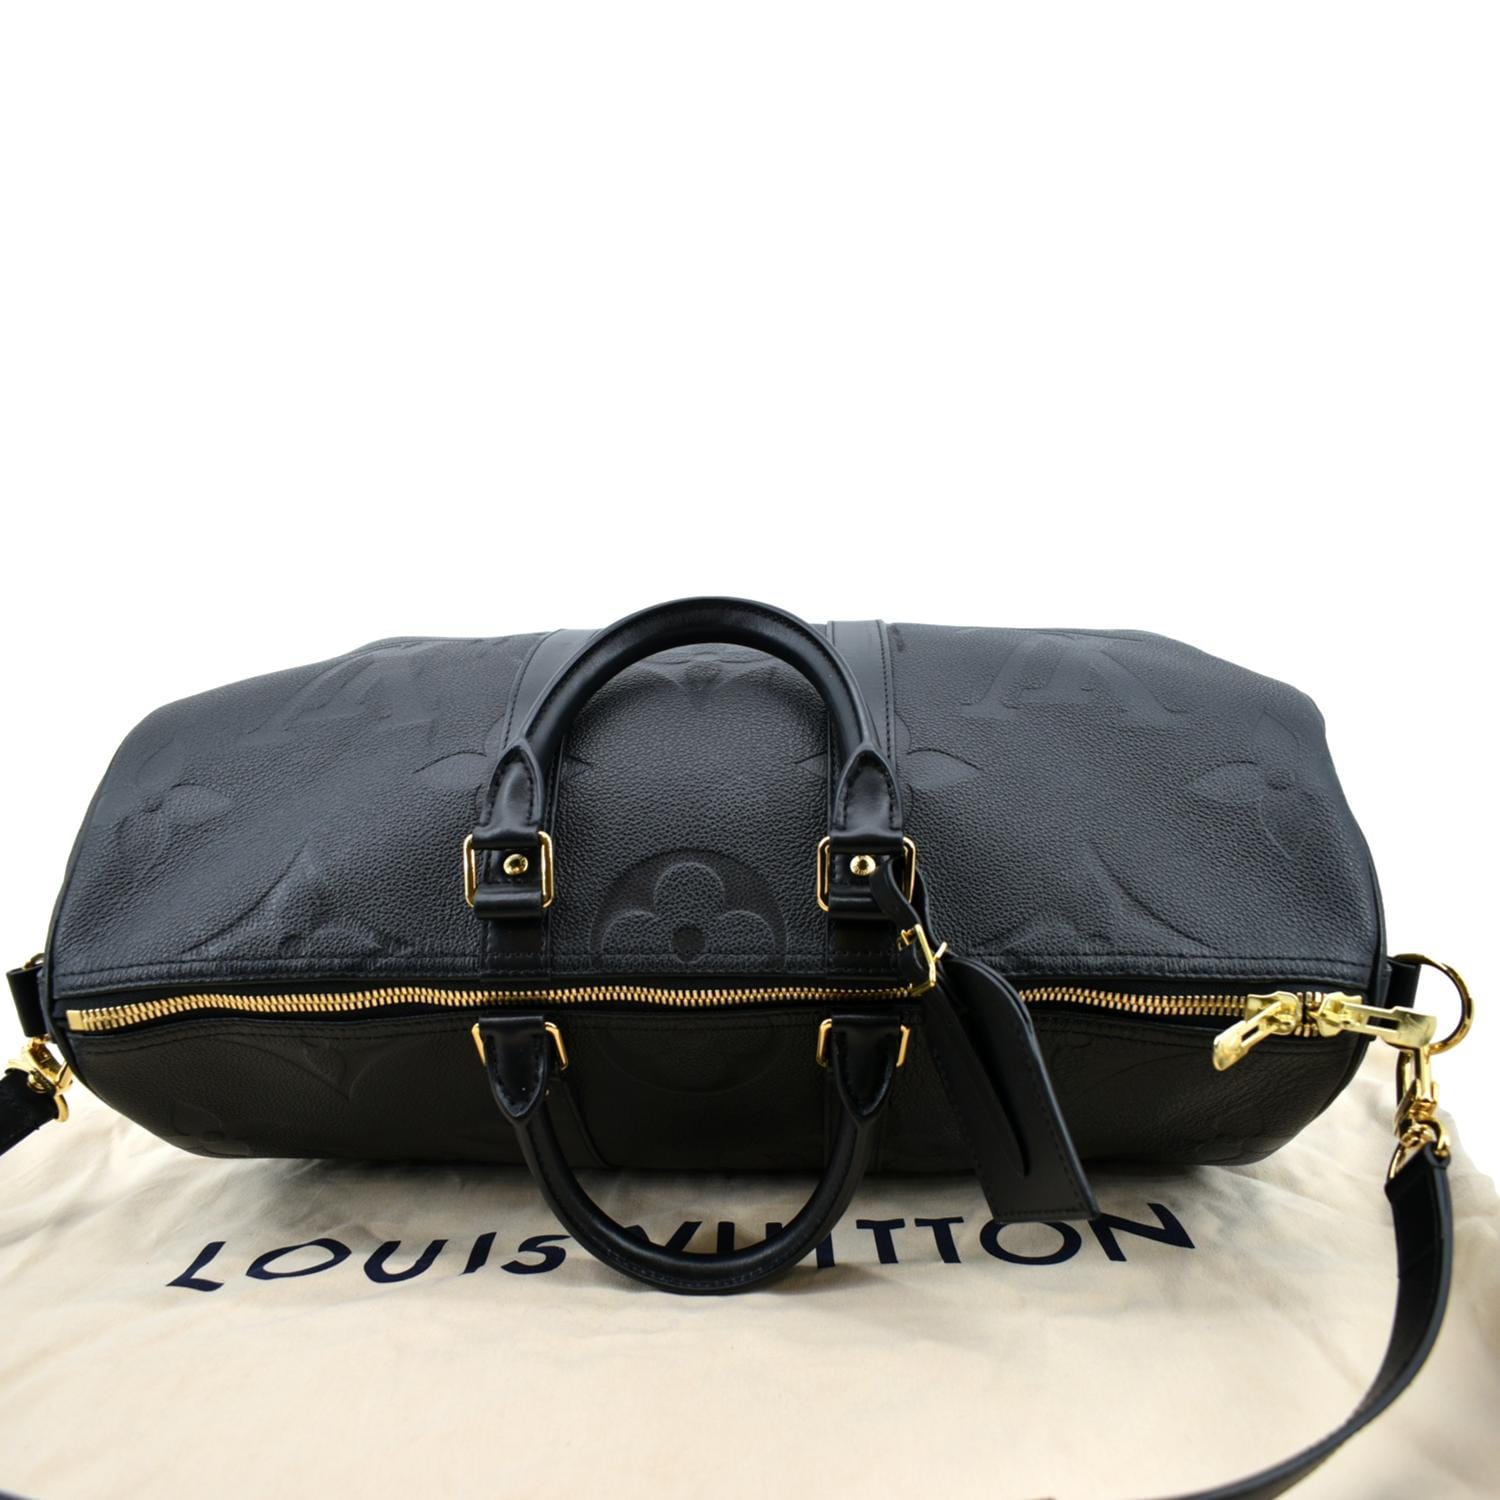 Louis Vuitton - Keepall Bandoulière 45 - Grey - Monogram Canvas - Men - Travel Bag - Luxury